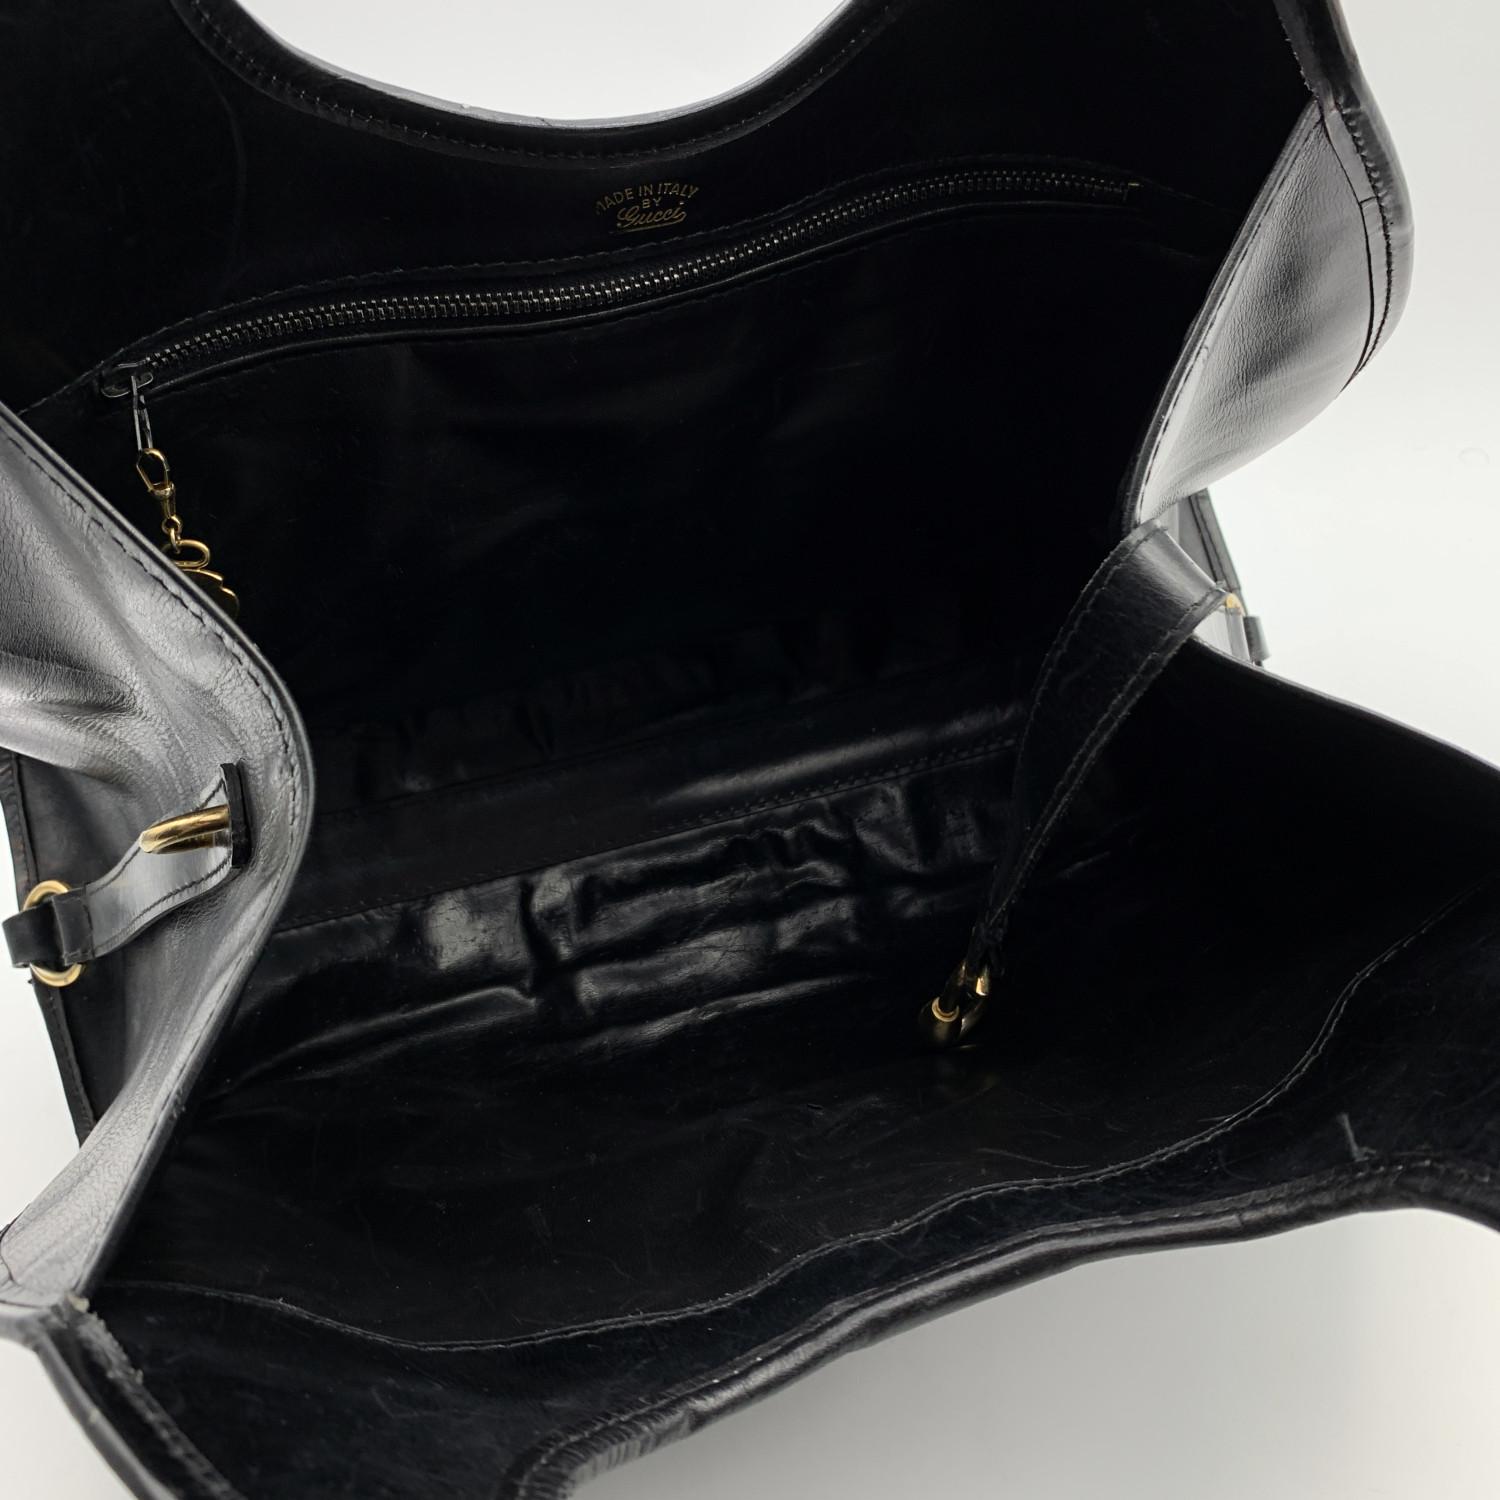 Magnifique sac hobo 'Stirrup' de Gucci, réalisé en cuir noir. Matériel en métal doré. La sangle se replie et se ferme à l'aide d'un bouton. Détails de l'éperon sur le devant et sur les poignées. Intérieur en cuir avec une poche latérale zippée.